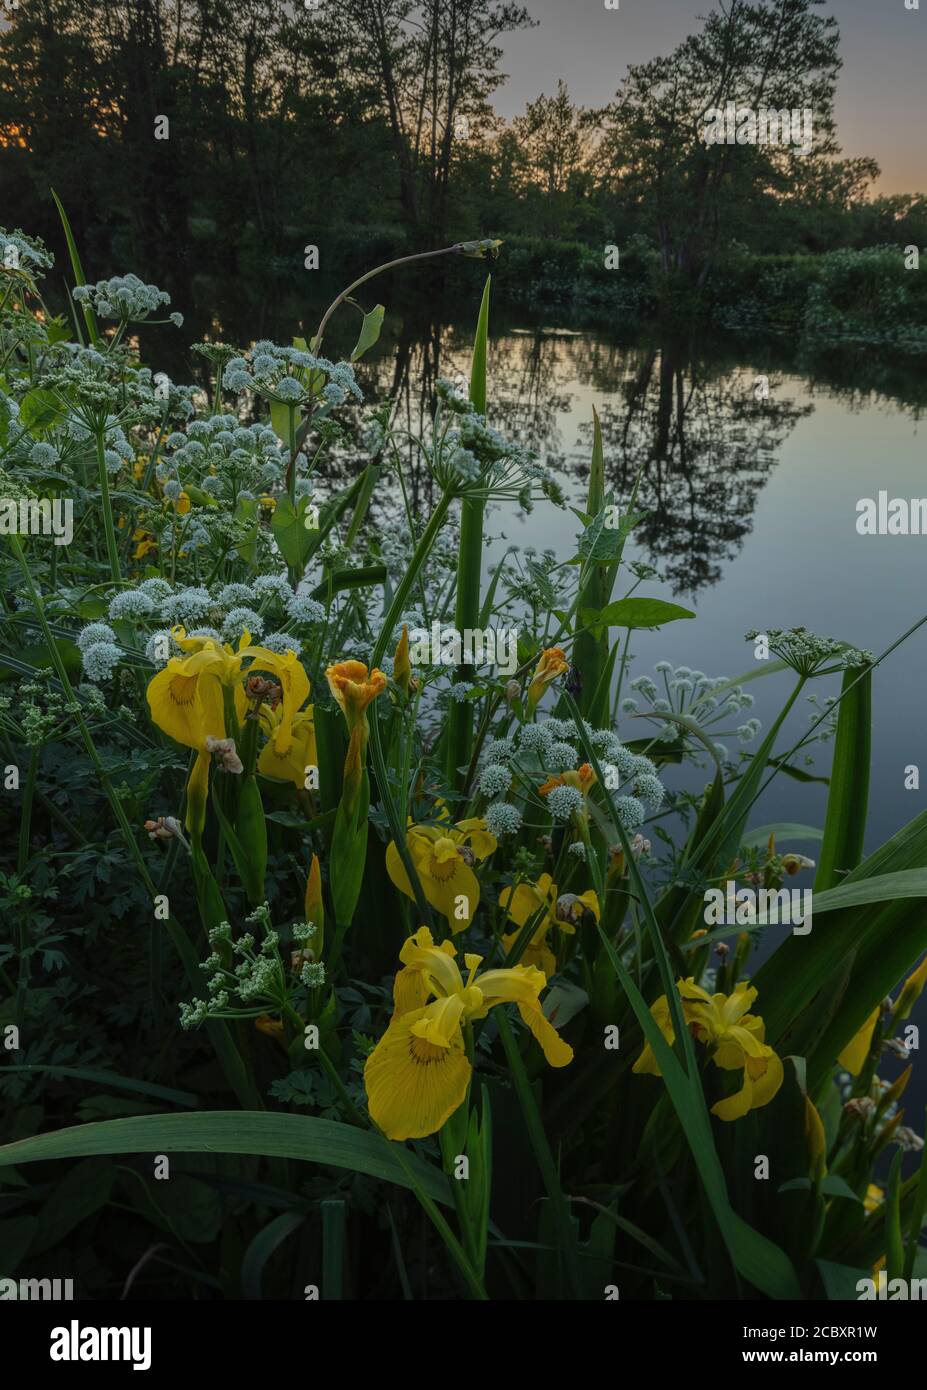 Le moût d'eau de pruche et l'iris jaune poussent près de la rivière Stour, avec des alders au-delà. Lumière du soir. Dorset. Banque D'Images